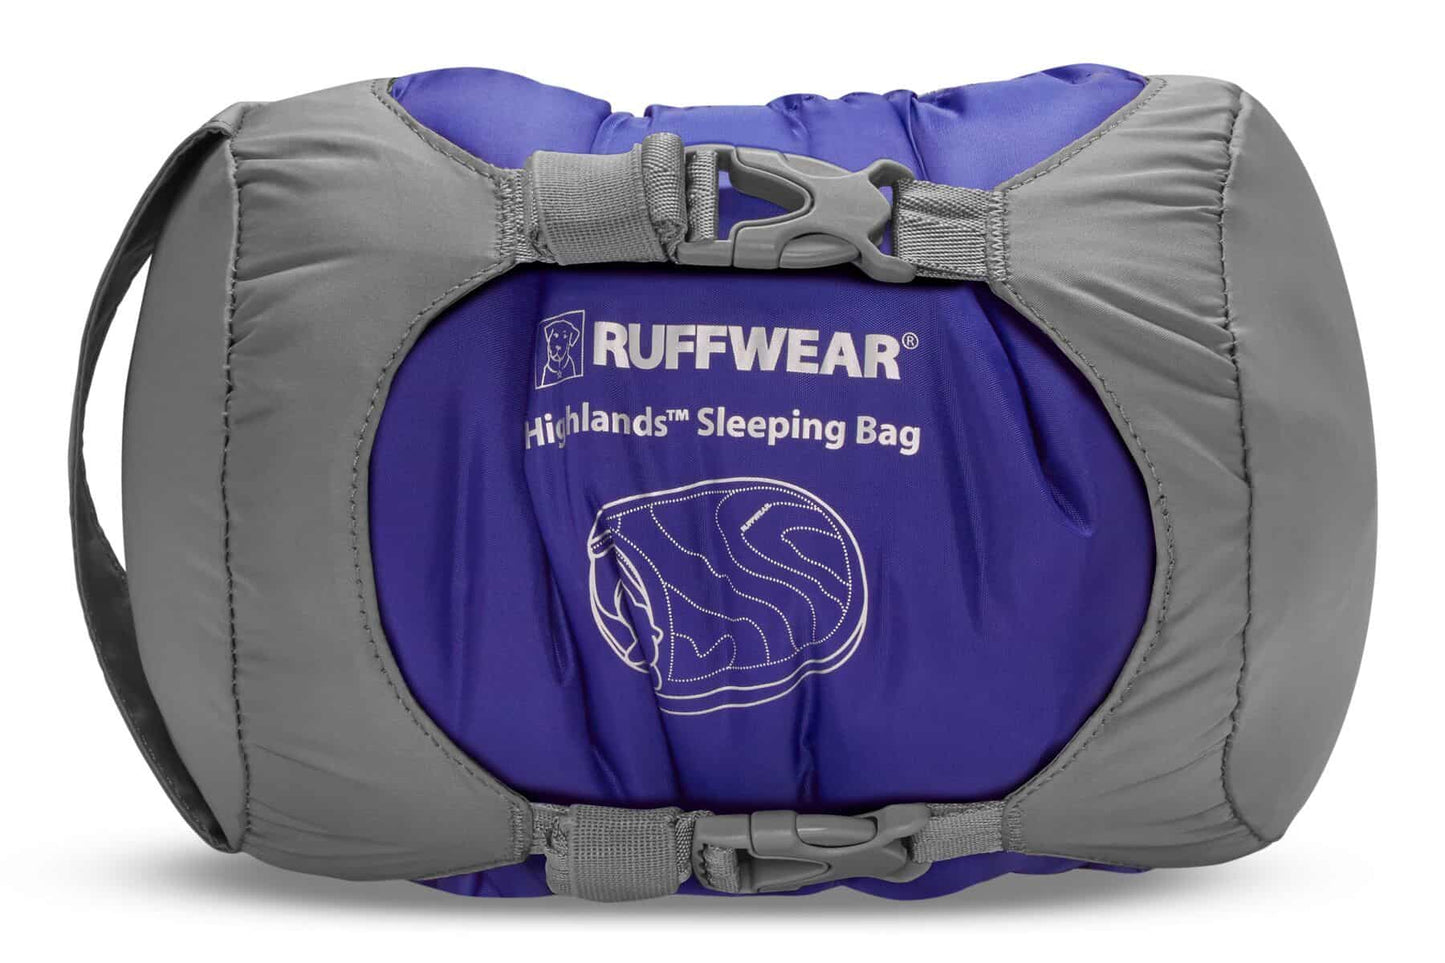 Ruffwear - Highlands Sleeping Bag